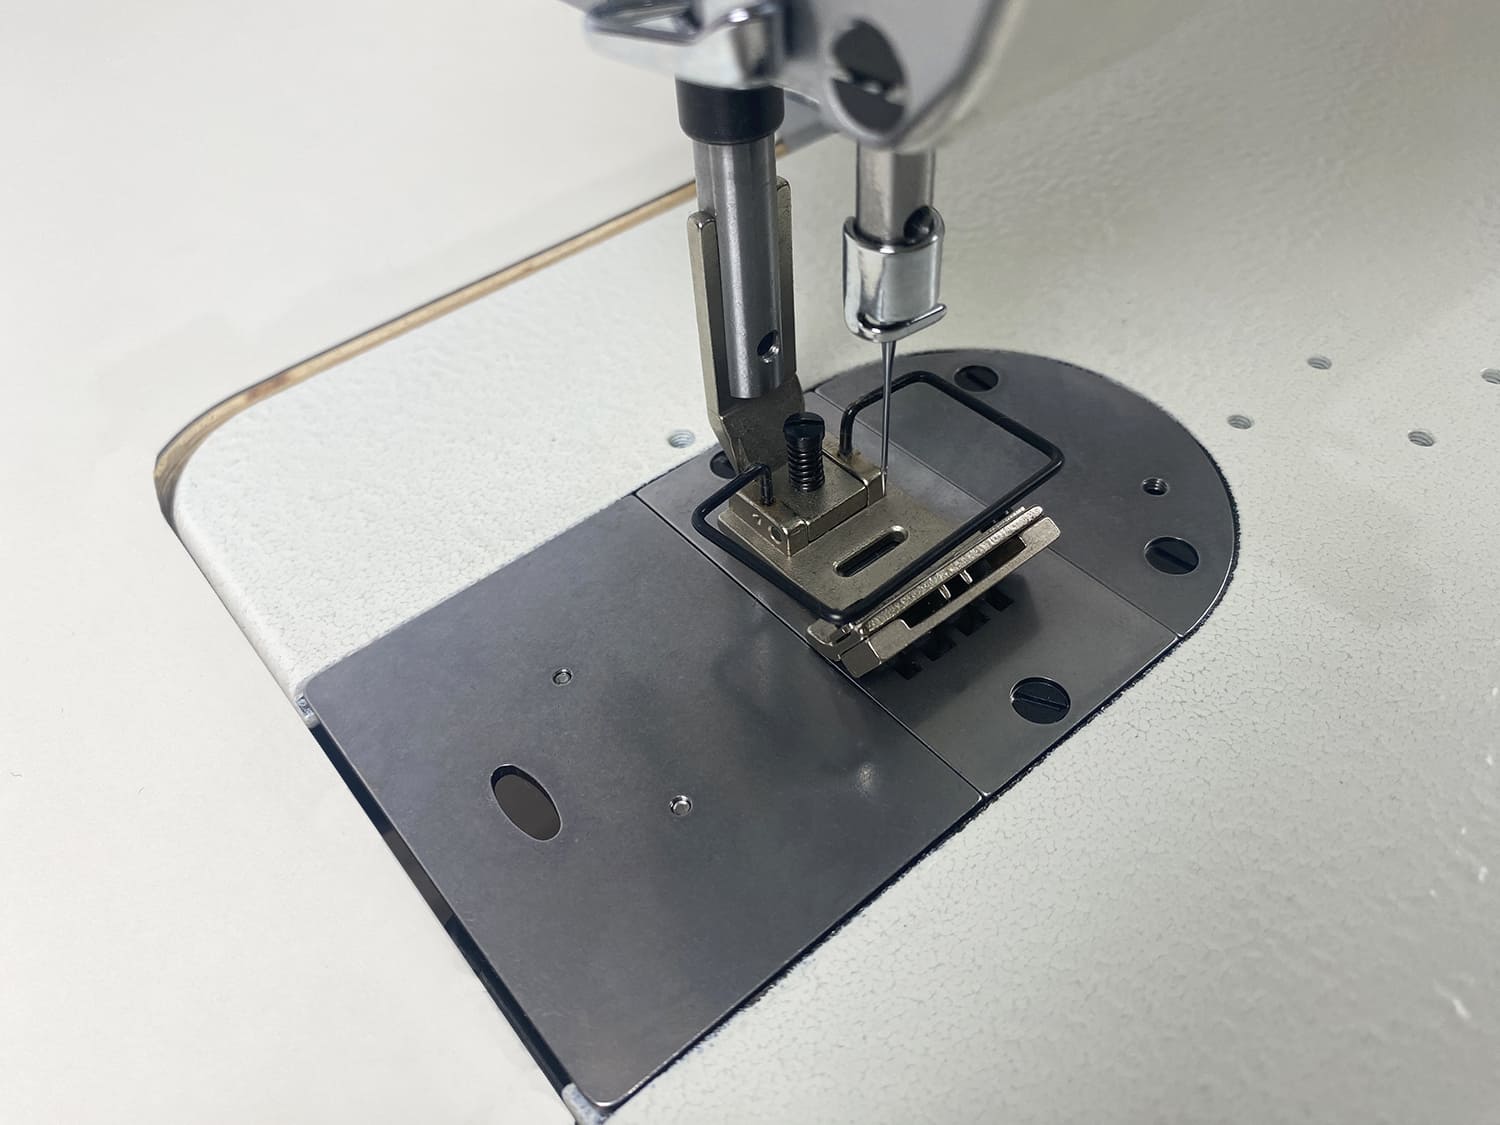 Промышленная швейная машина строчки зигзаг Aurora A-2284D (прямой привод)